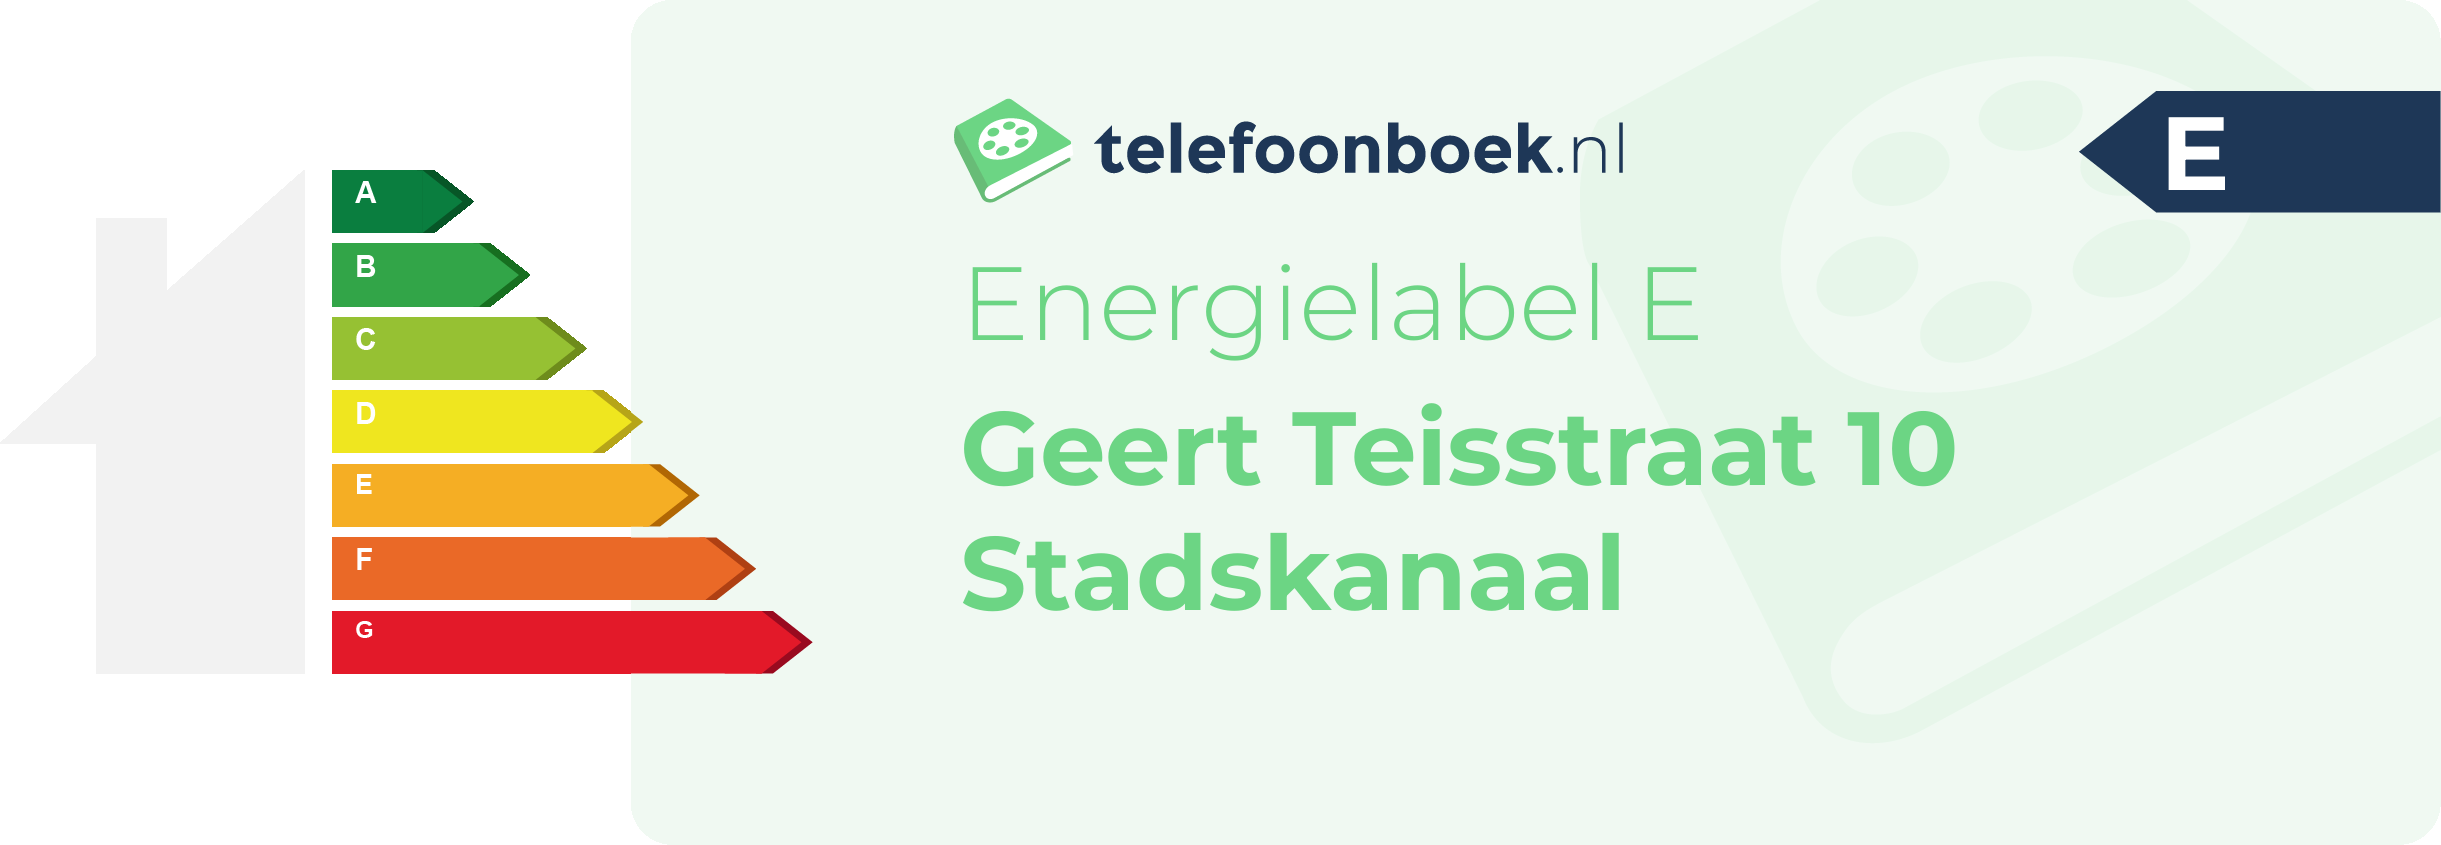 Energielabel Geert Teisstraat 10 Stadskanaal